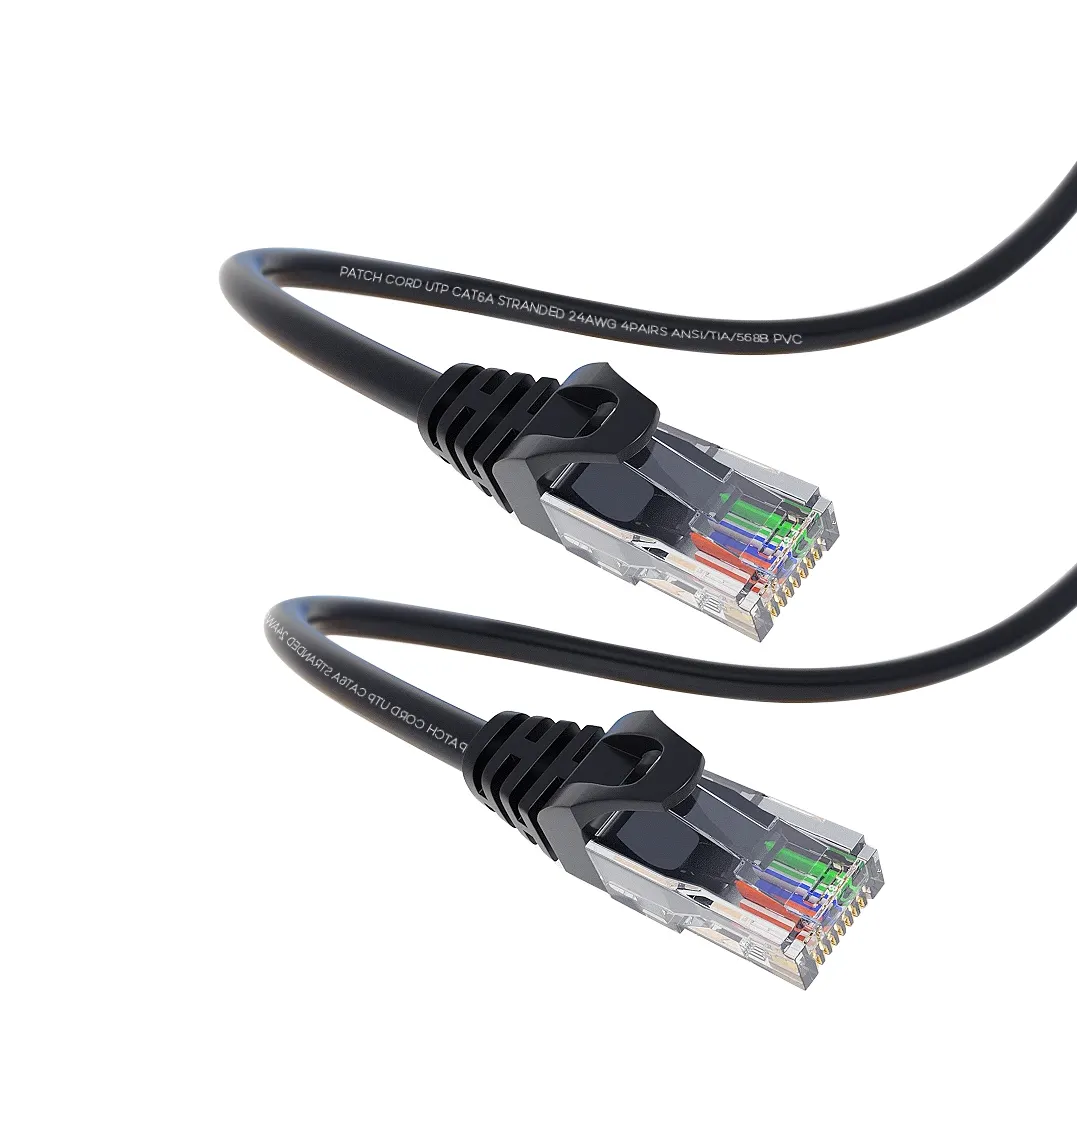 23.5Cm Kepala Ganda Ramping Cat6 28awg UTP OEM Telanjang Tembaga Utp Kabel Patch 4 Pasang Jaringan Ethernet Kabel Jaringan